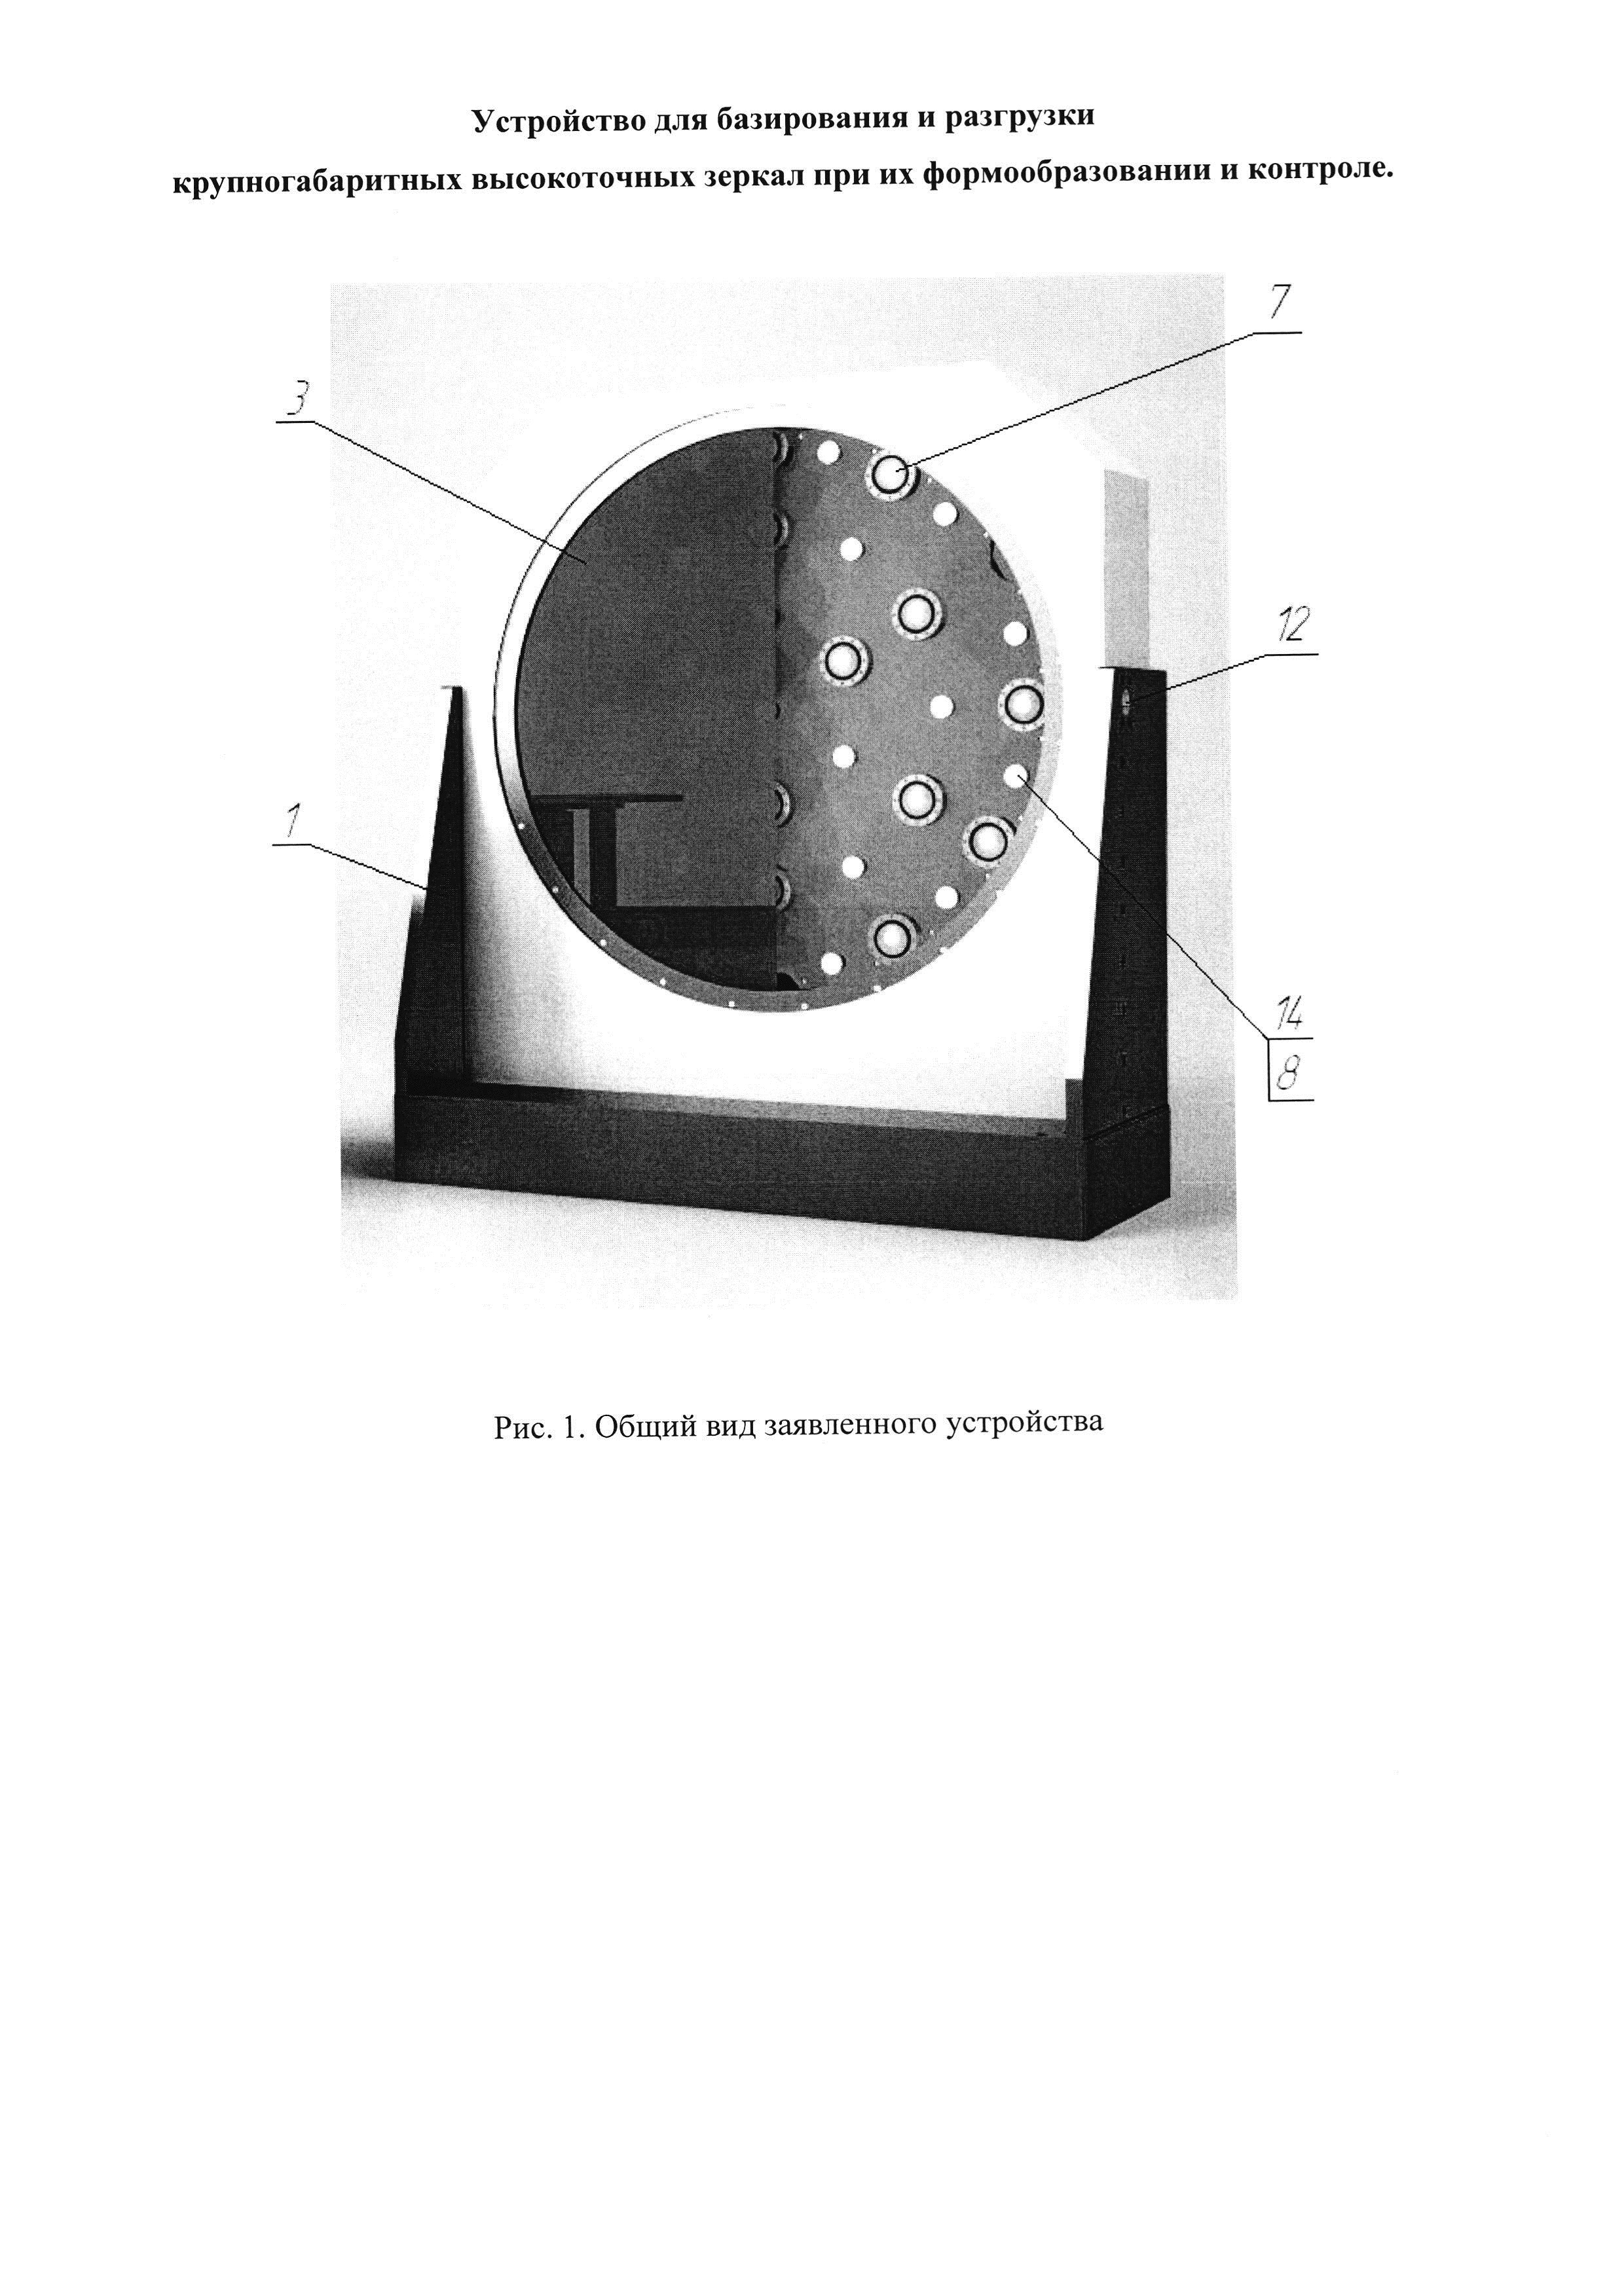 Устройство для базирования и разгрузки крупногабаритных высокоточных зеркал при их формообразовании и контроле